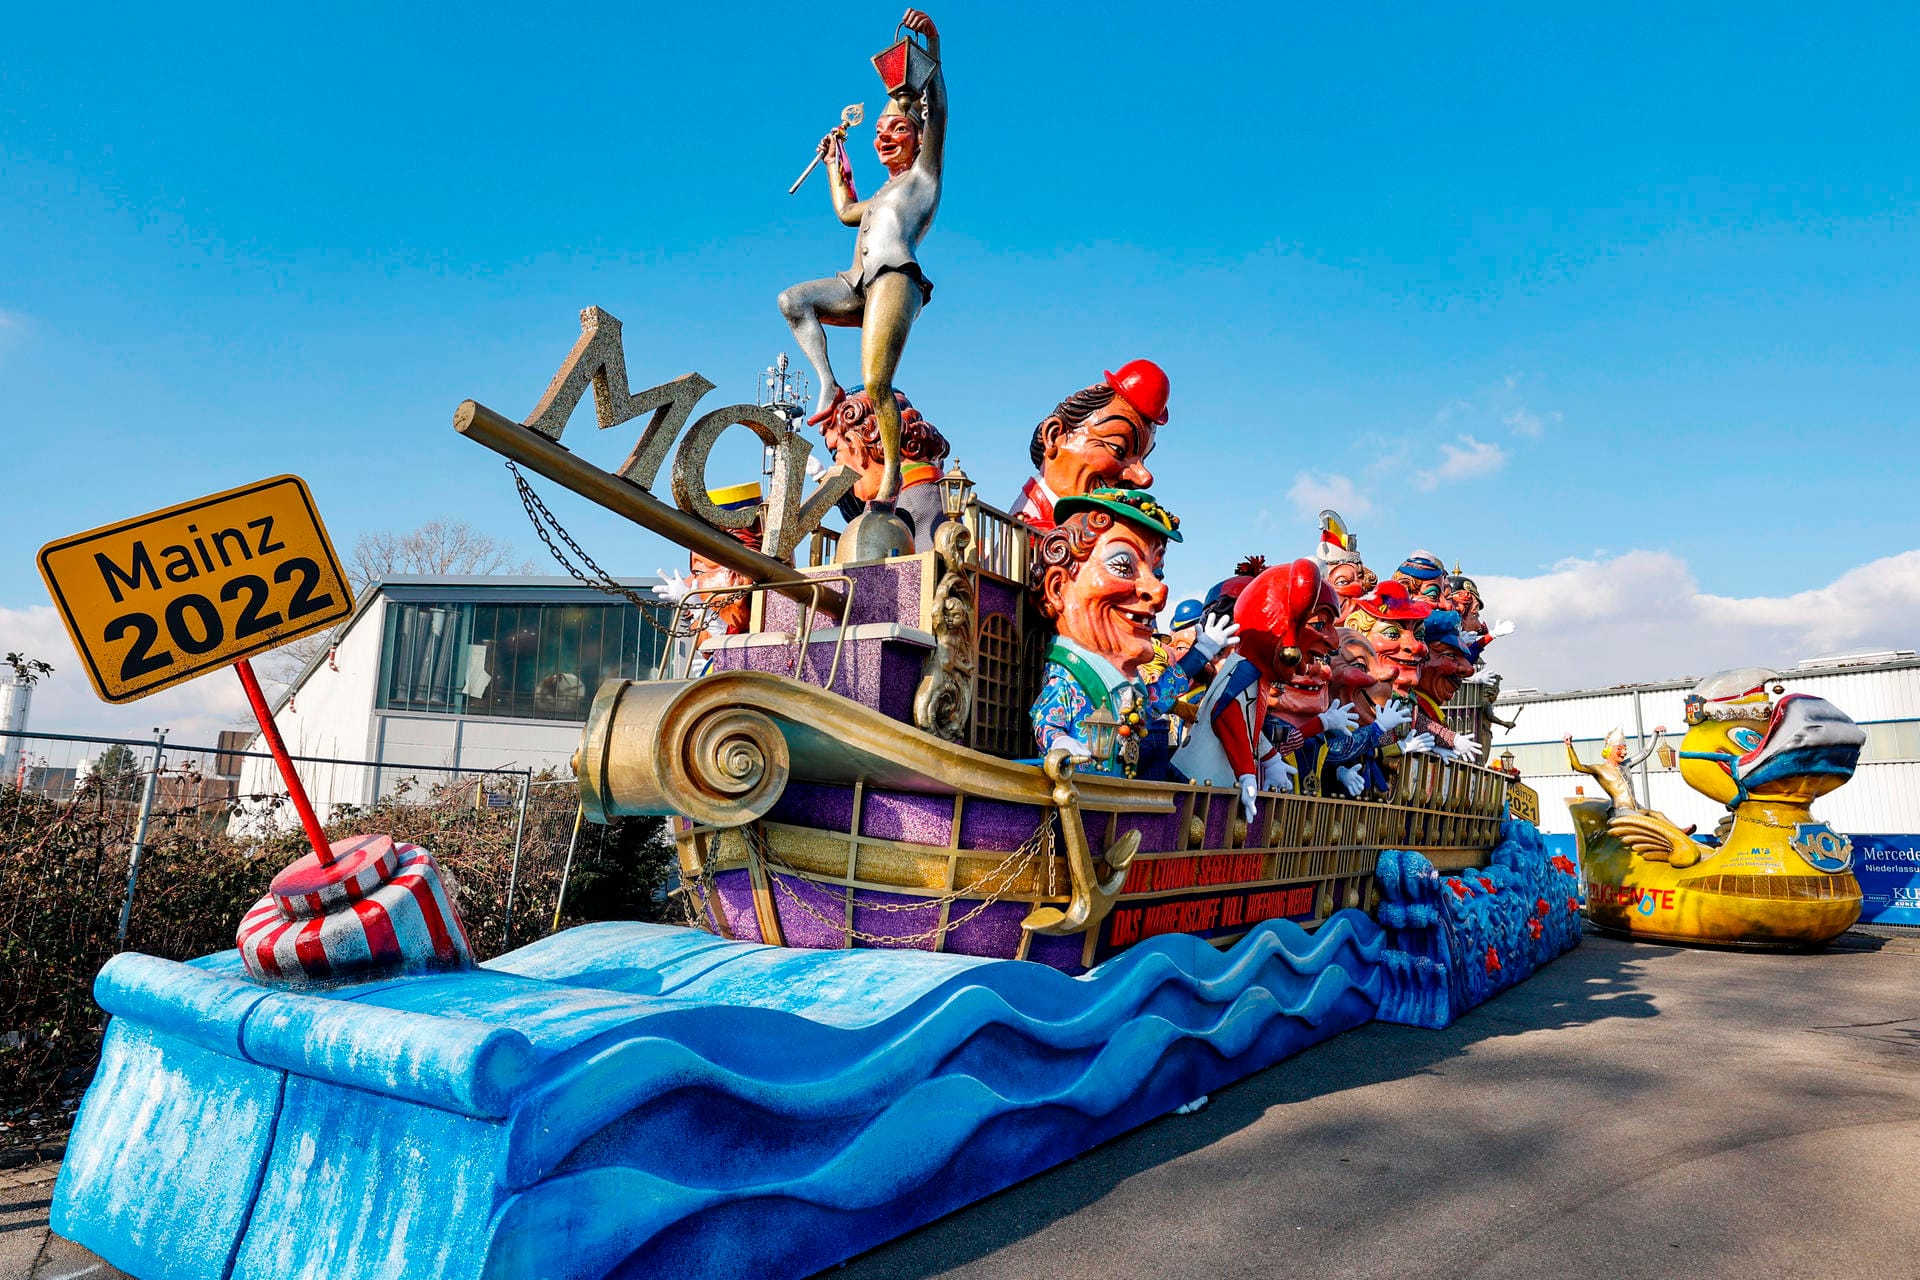 Ein Umzugswagen des Mainzer Carnevals-Vereins zeigt ein riesiges Narrenschiff, weit über zehn Meter lang, das von Wellen umspült mit unzähligen Pappmacheköpfen besetzt ist und die Botschaft sendet: "Trotz Corona segelt heiter, das Narrenschiff voll Hoffnung weiter."